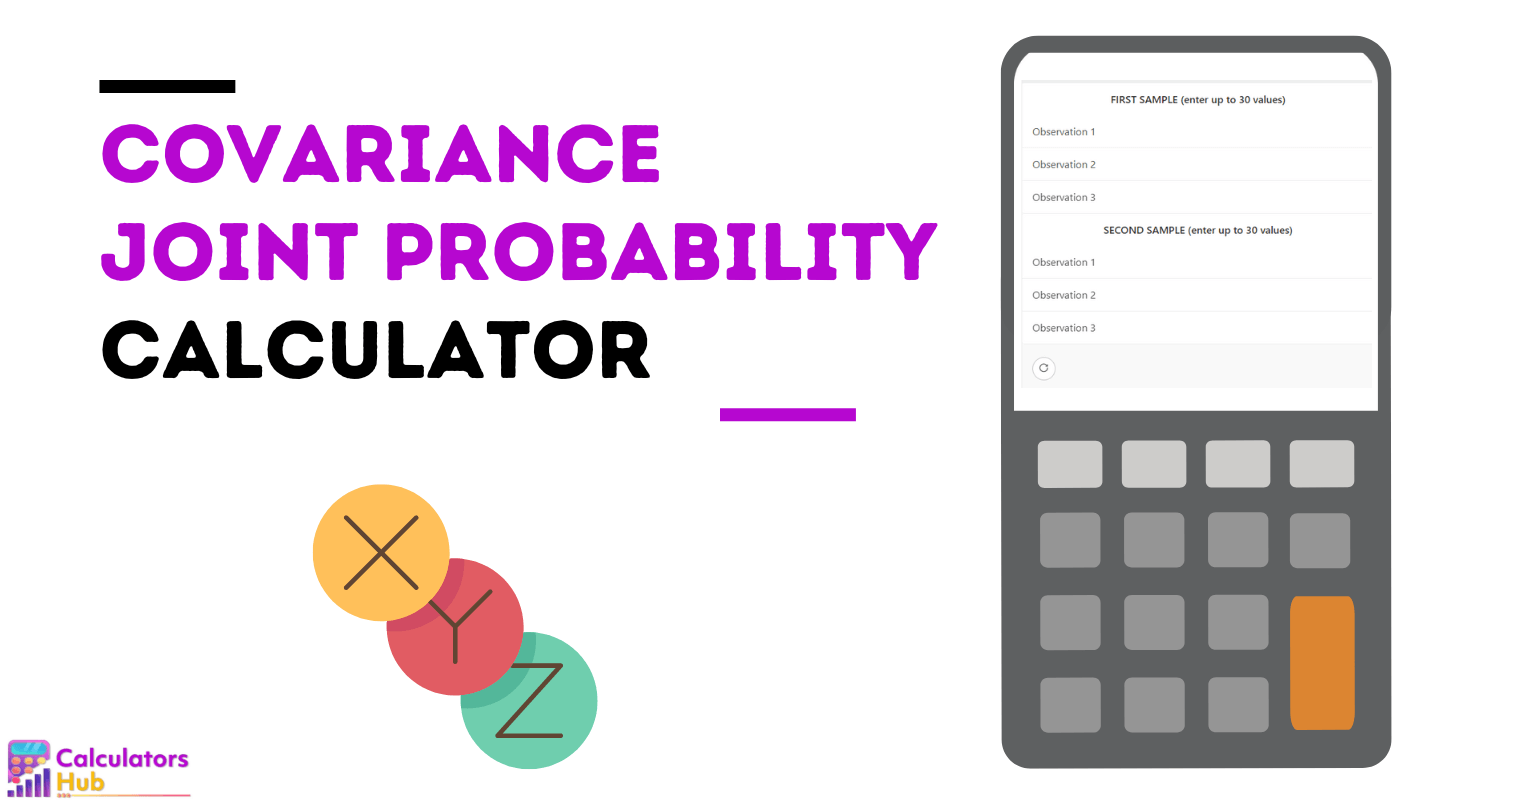 Calculadora de covarianza Probabilidad conjunta